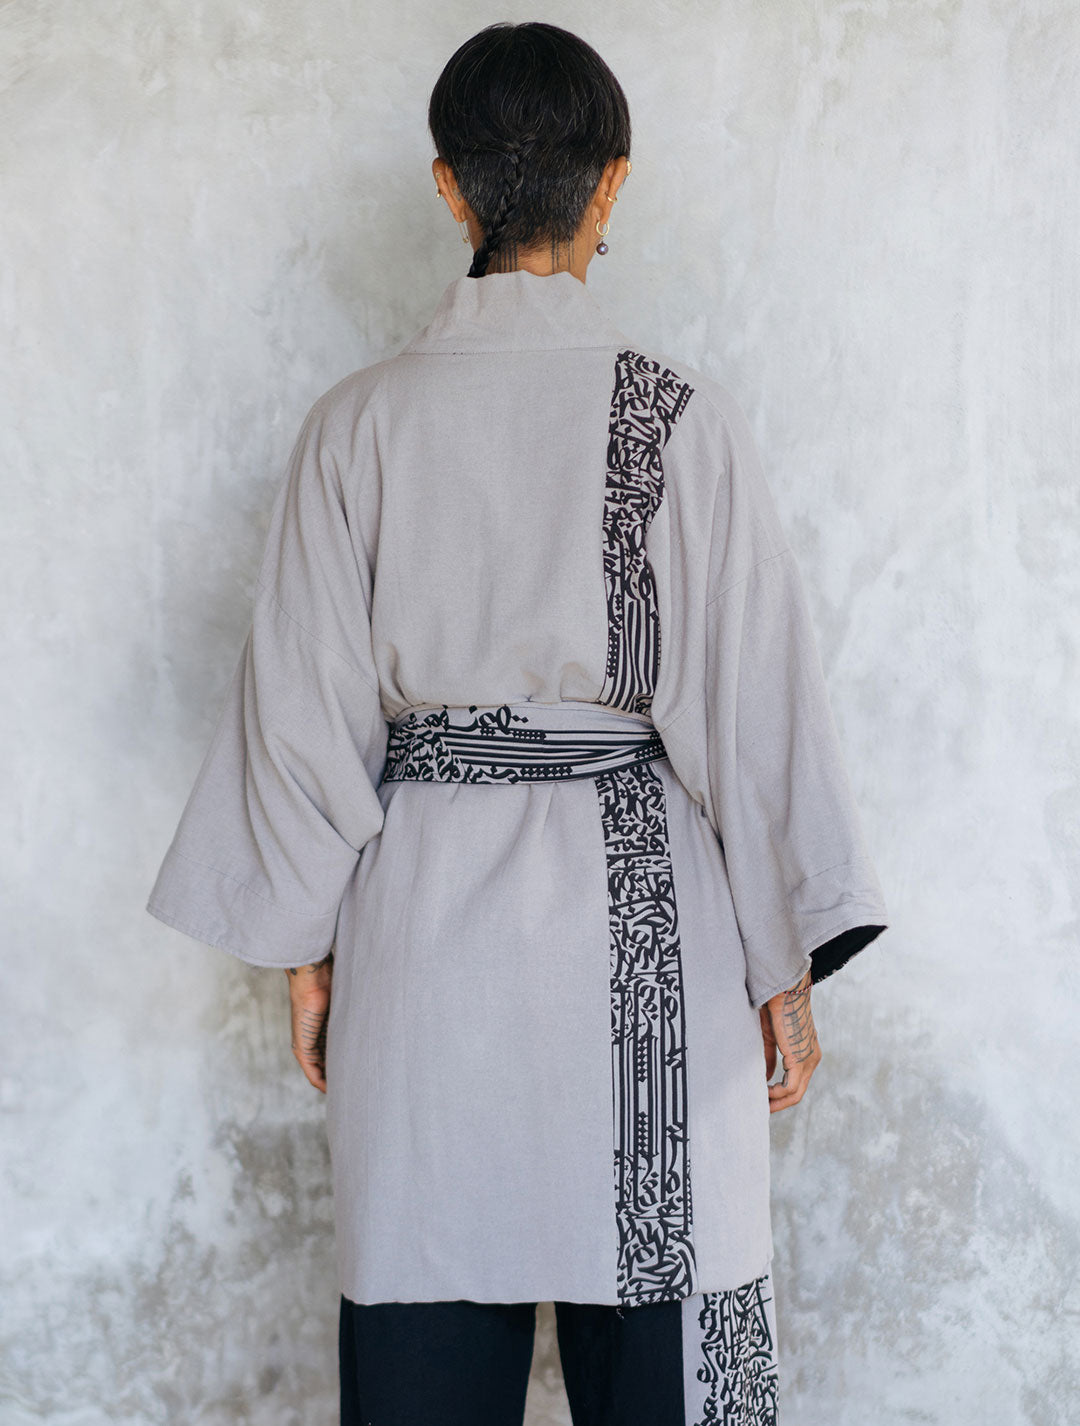 'Big Bear' Tribal Kimono by Shokraneh